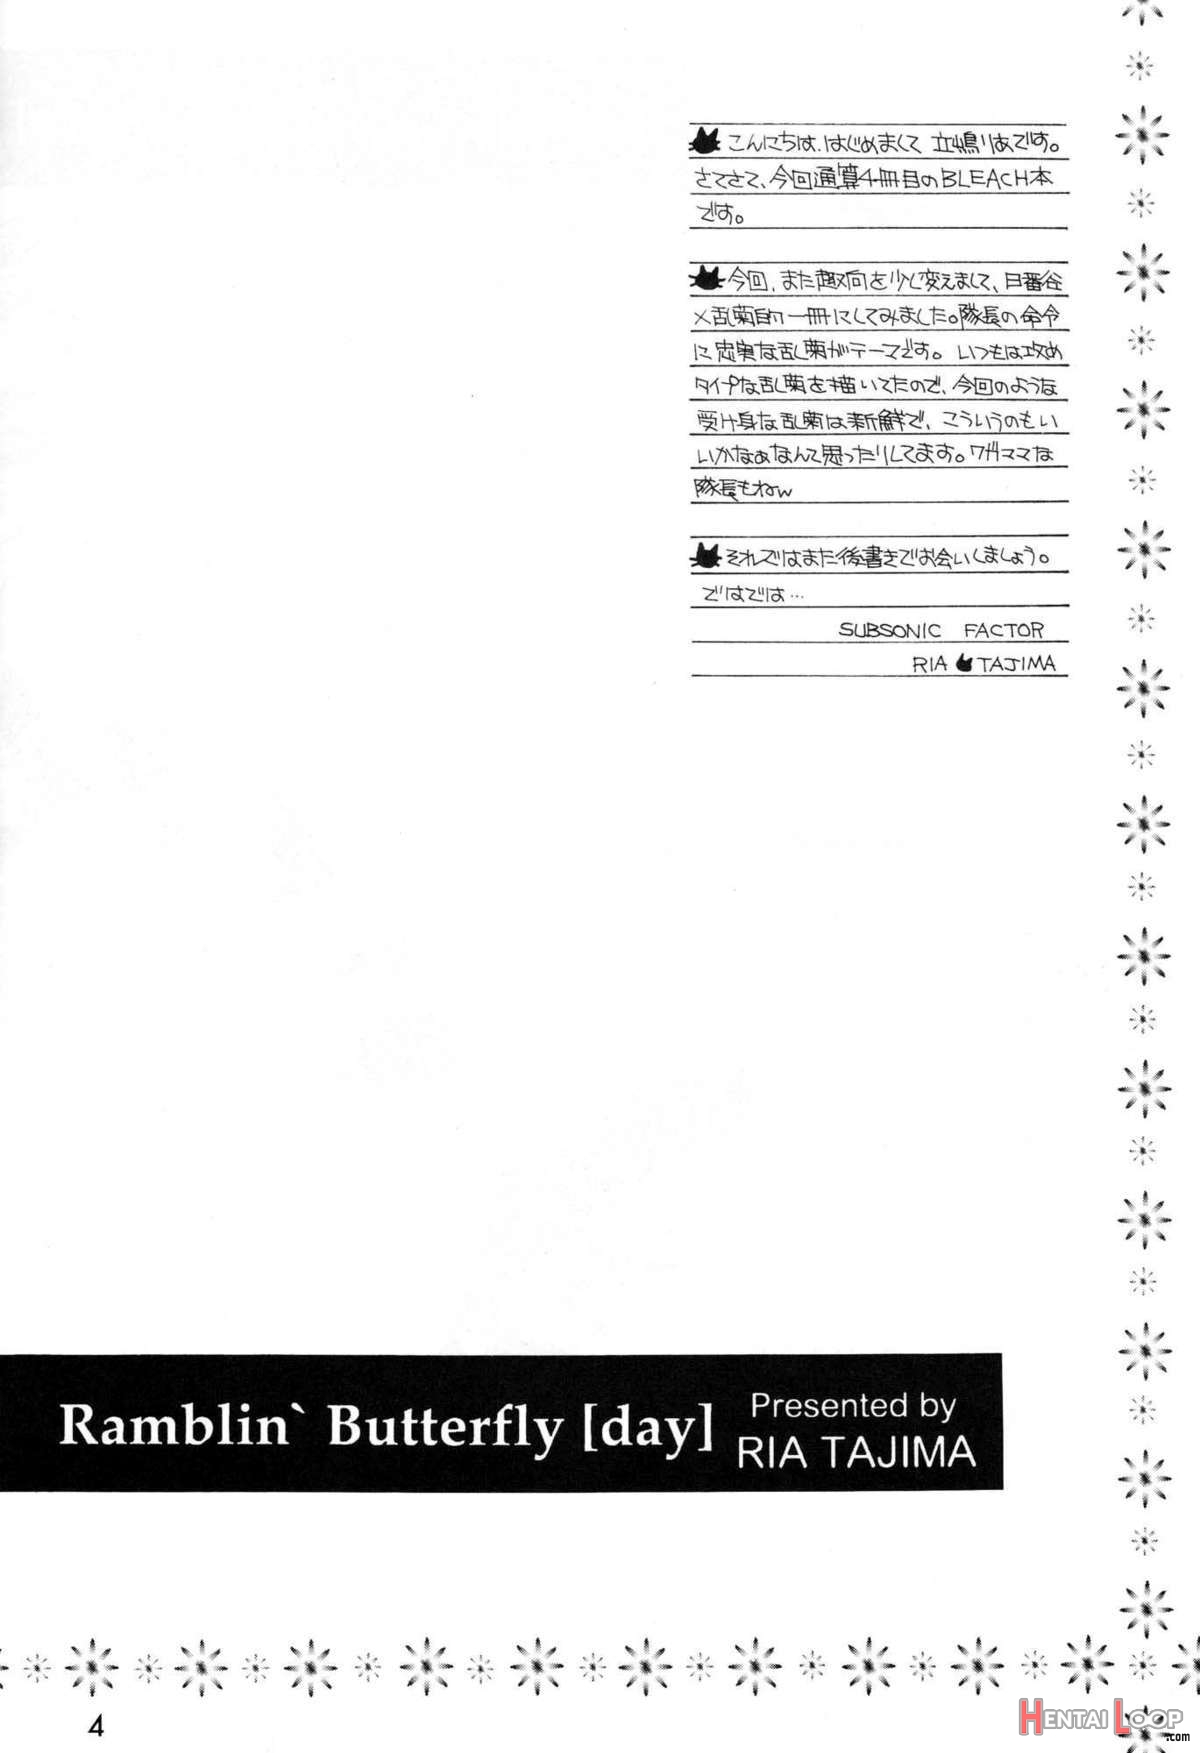 Ramblin' Butterfly page 3